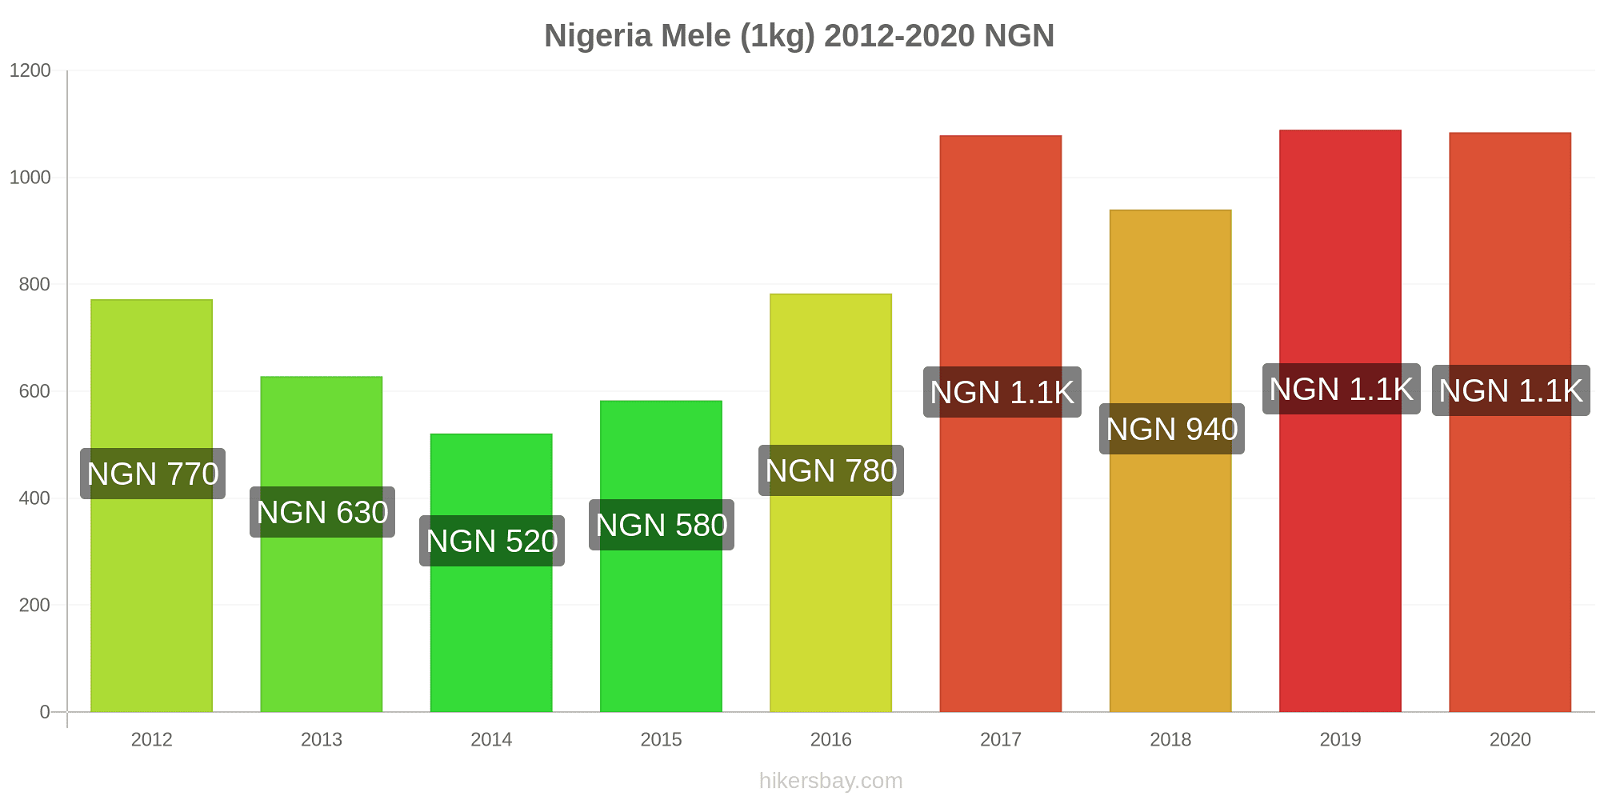 Nigeria variazioni di prezzo Mele (1kg) hikersbay.com